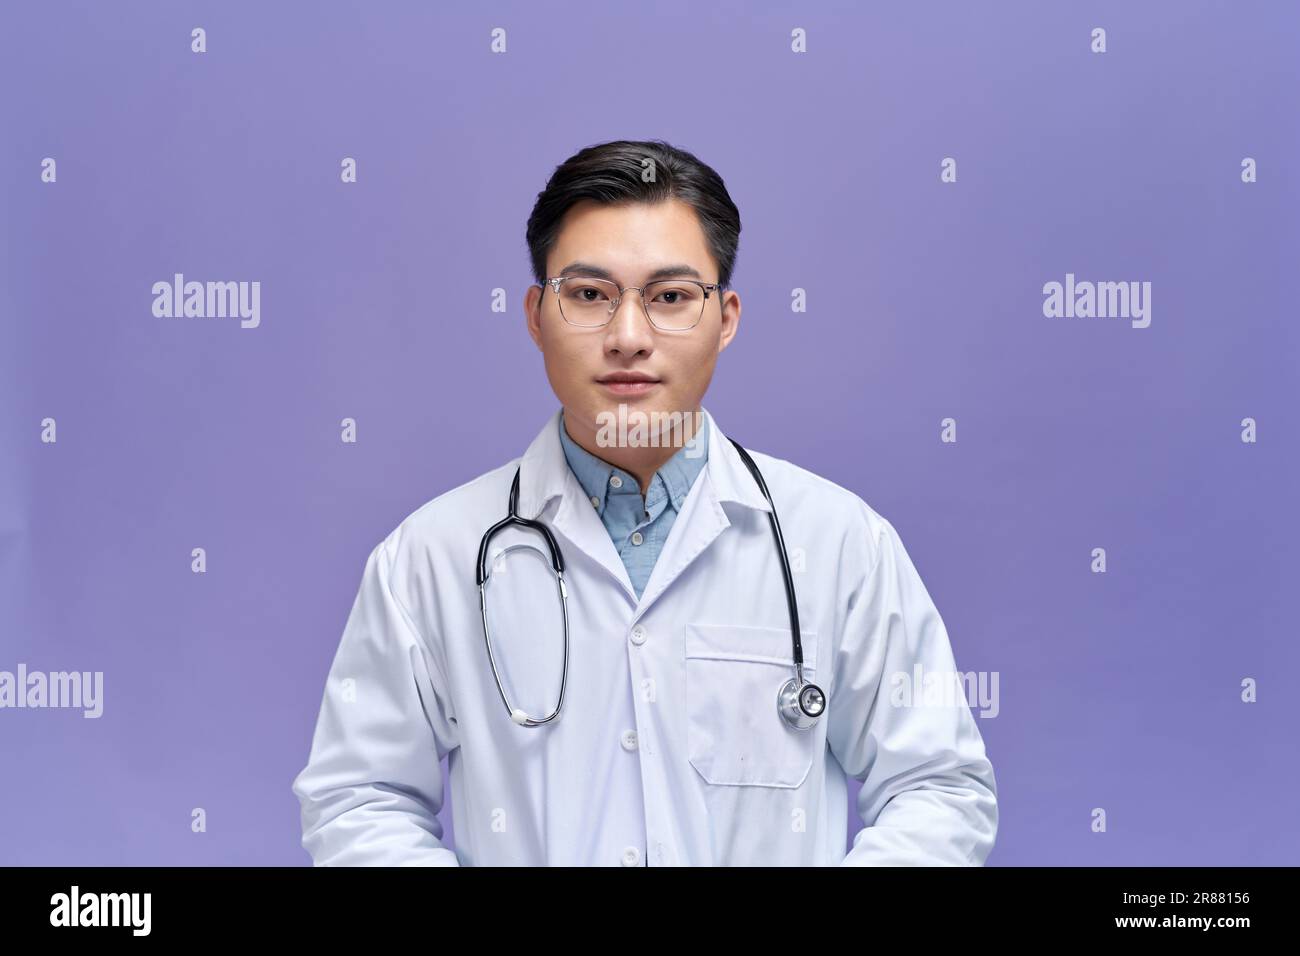 L'infermiere regola il fonendoscopio sul collo del medico Foto stock - Alamy